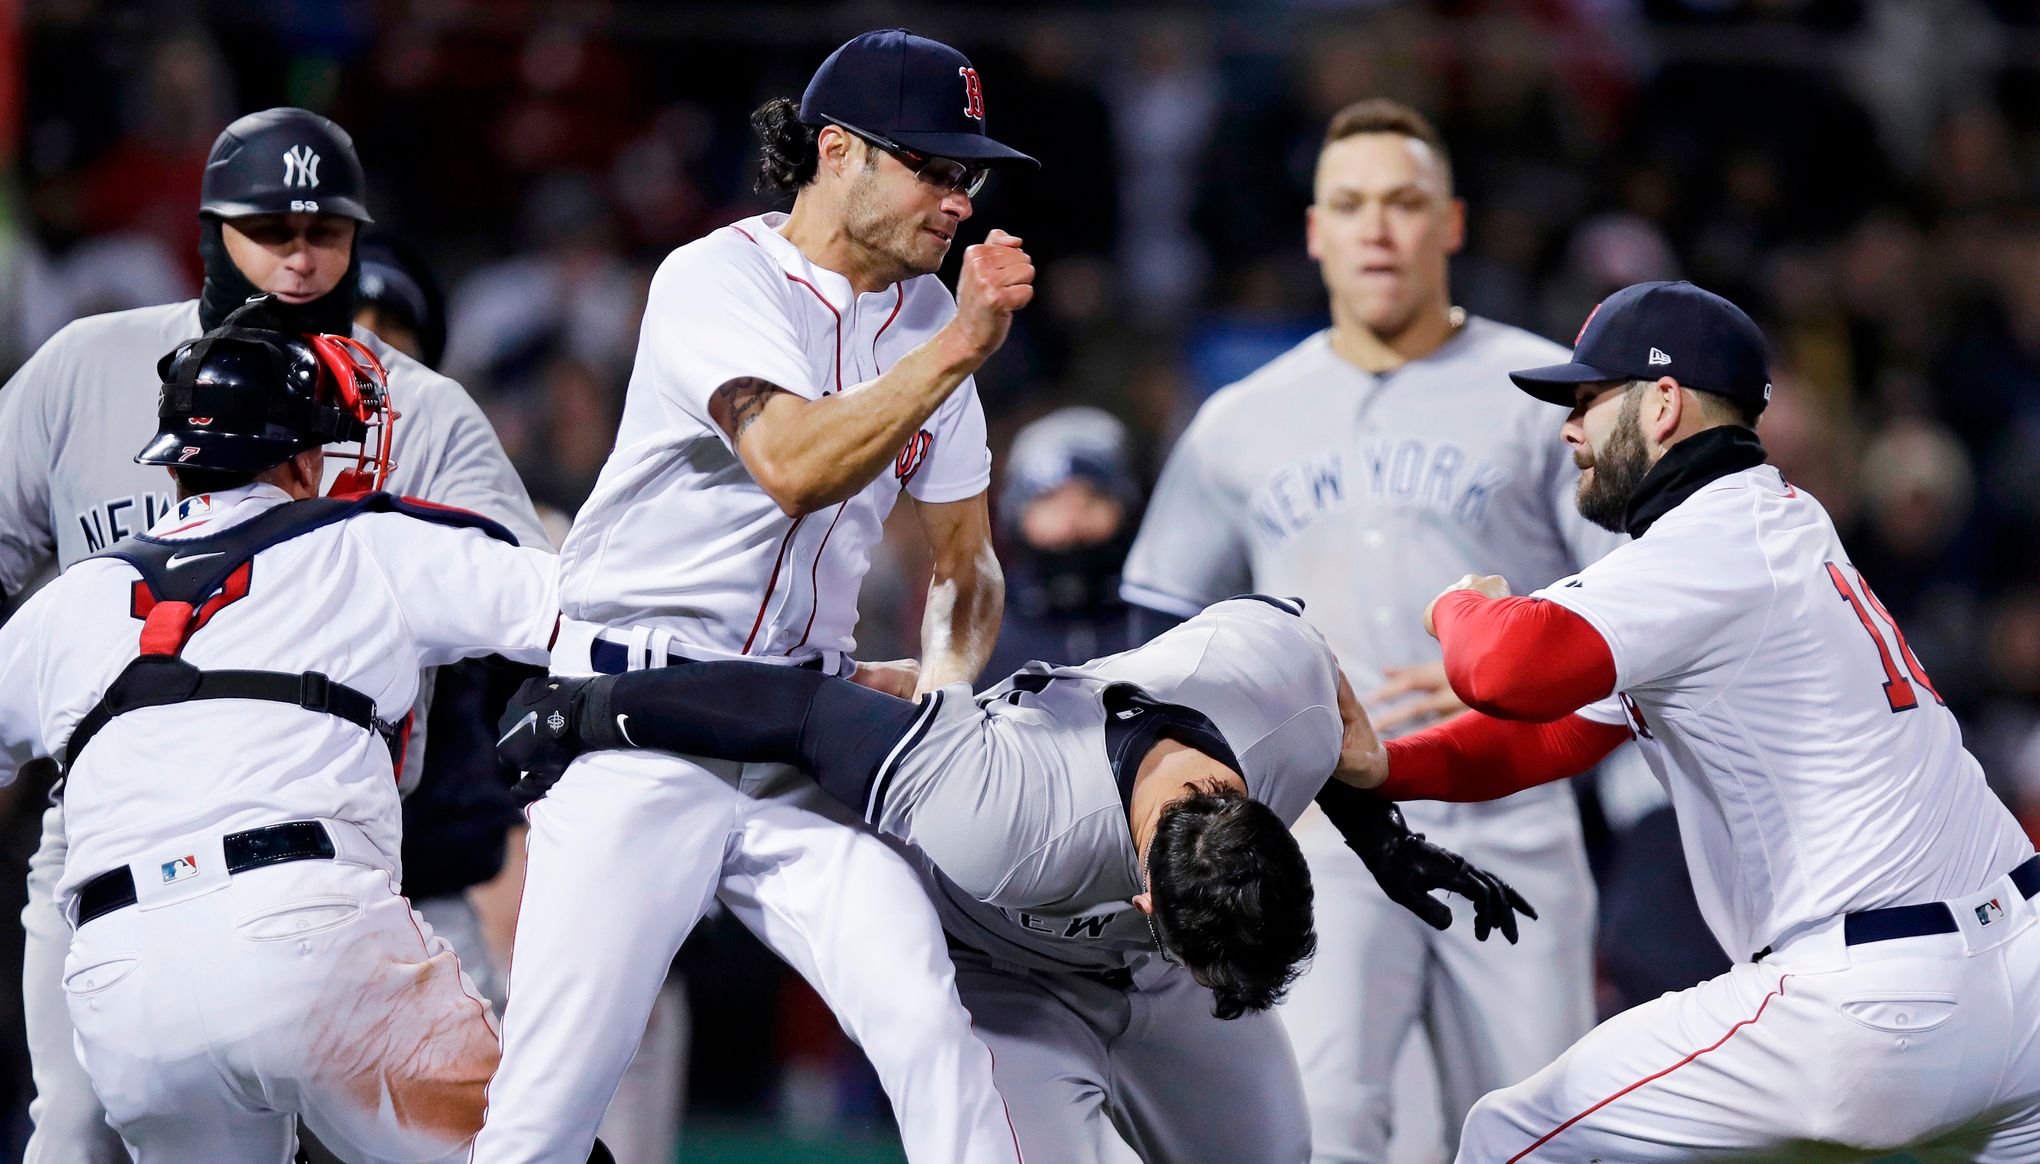 NY Yankees, Red Sox brawl as Joe Kelly throws at Tyler Austin